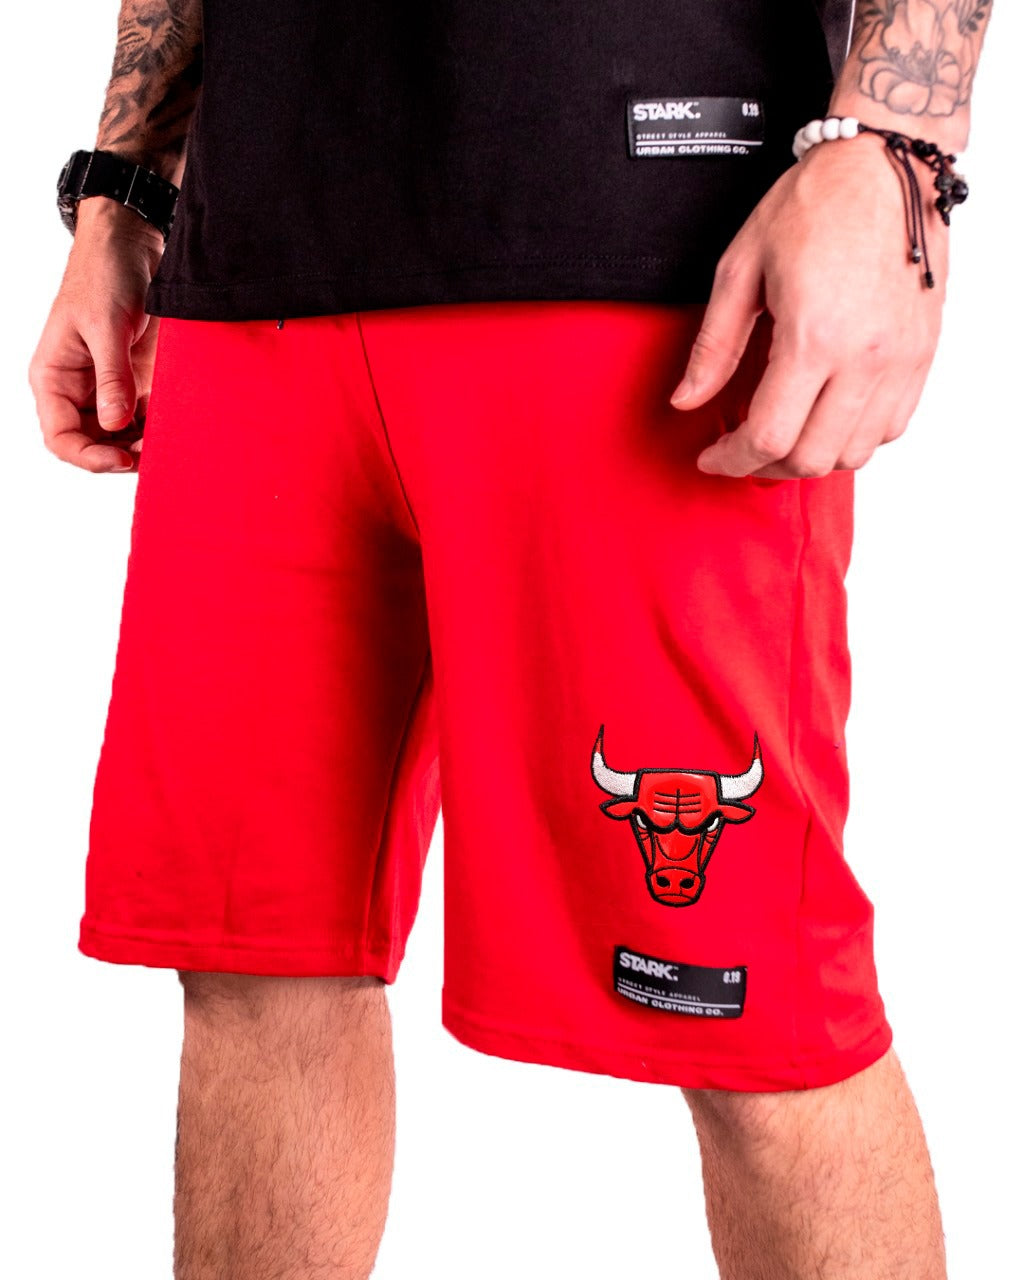 Pantaloneta Bulls roja bordado - Stark Brand